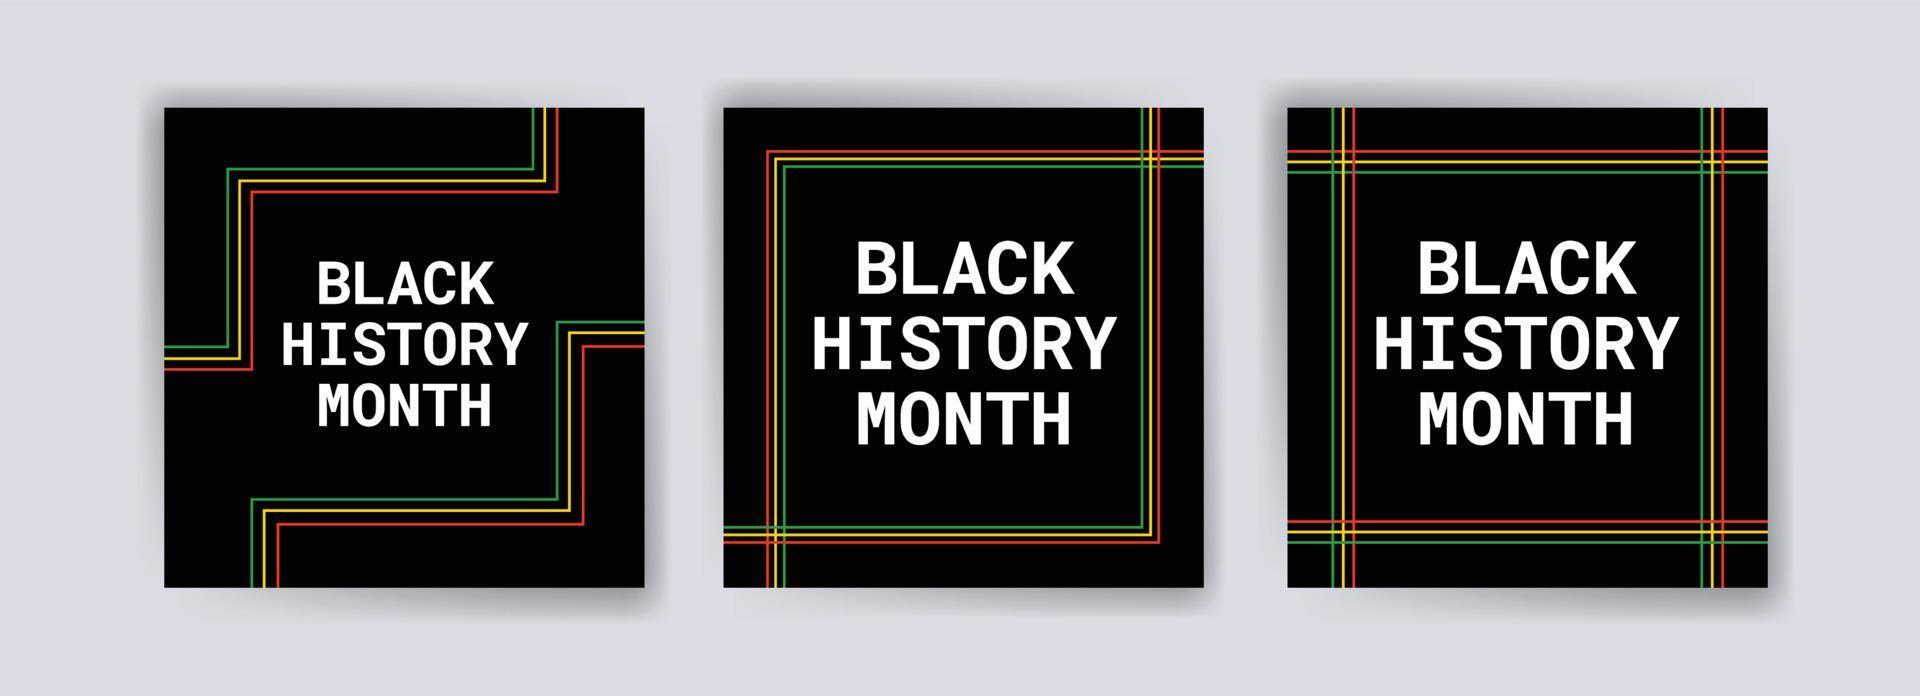 samling av svarta historia månad sociala medier inlägg. firar svart historia månad. vektor